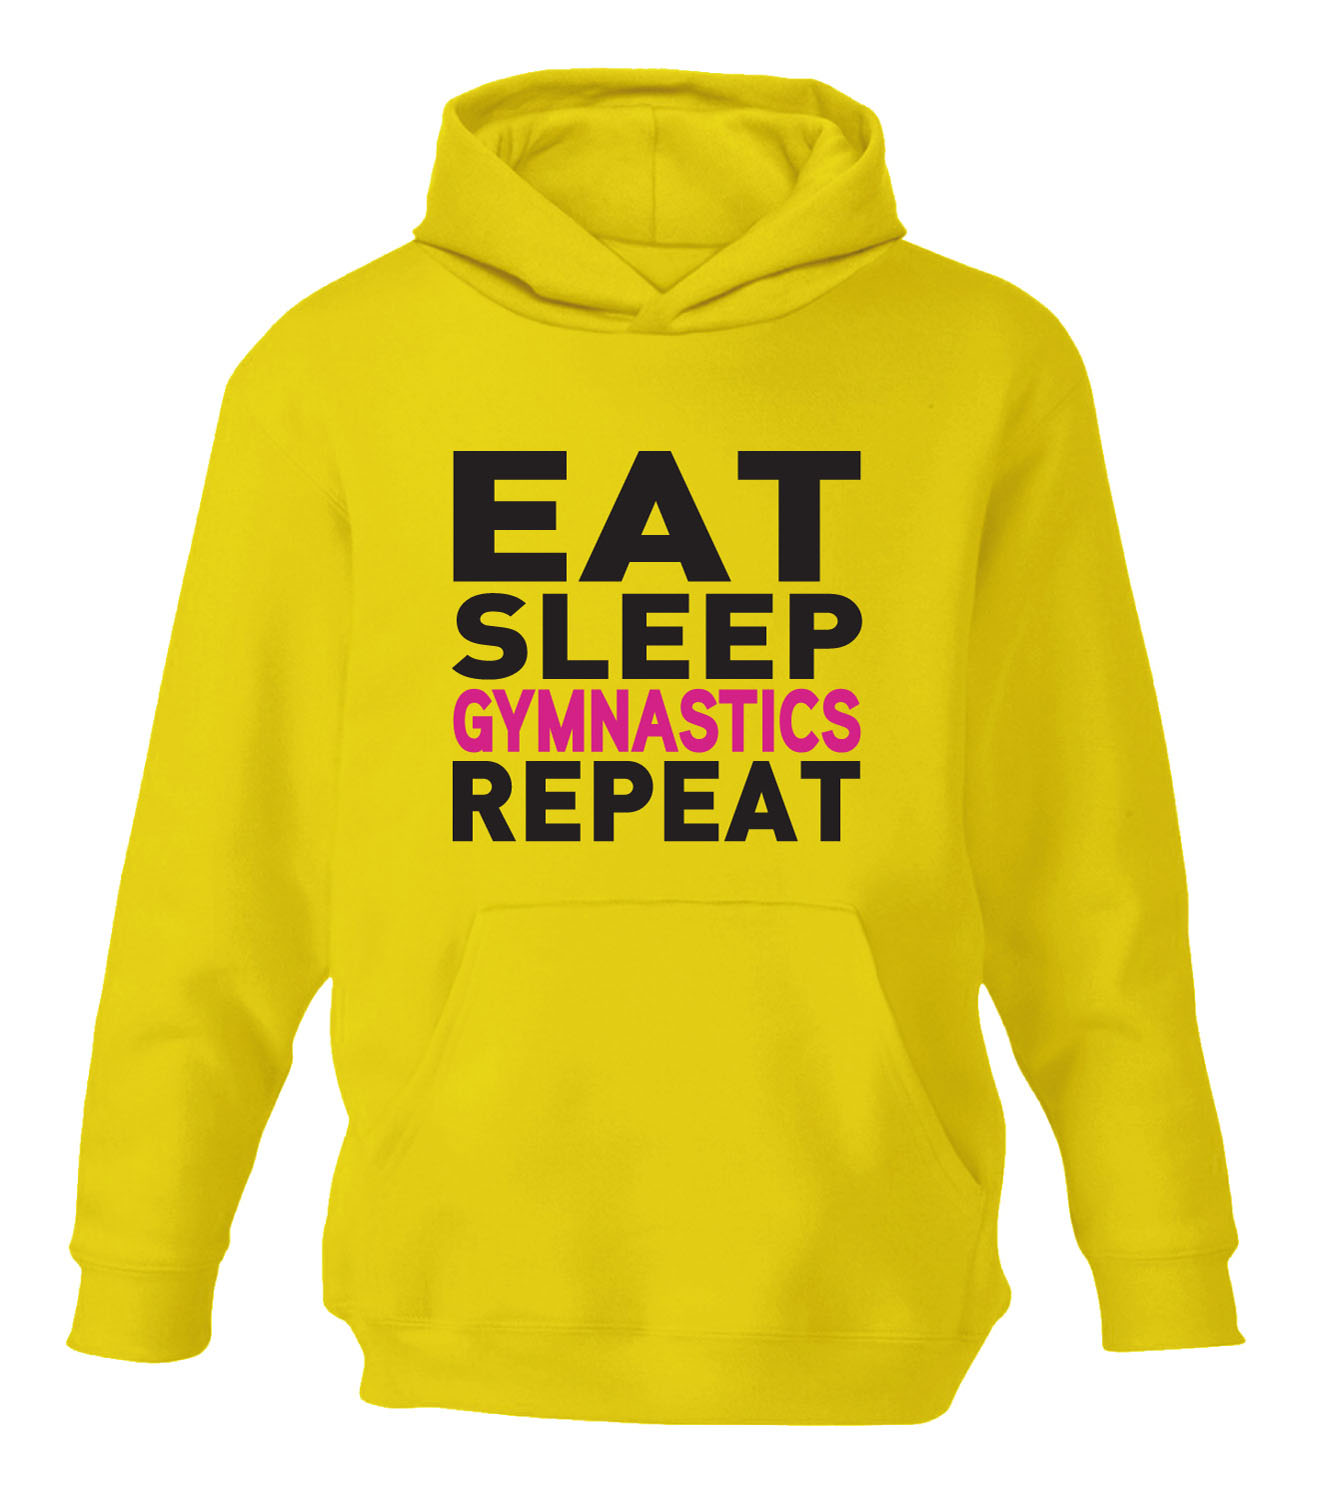 Eat Sleep Gymnastics! (™) – HalymWear